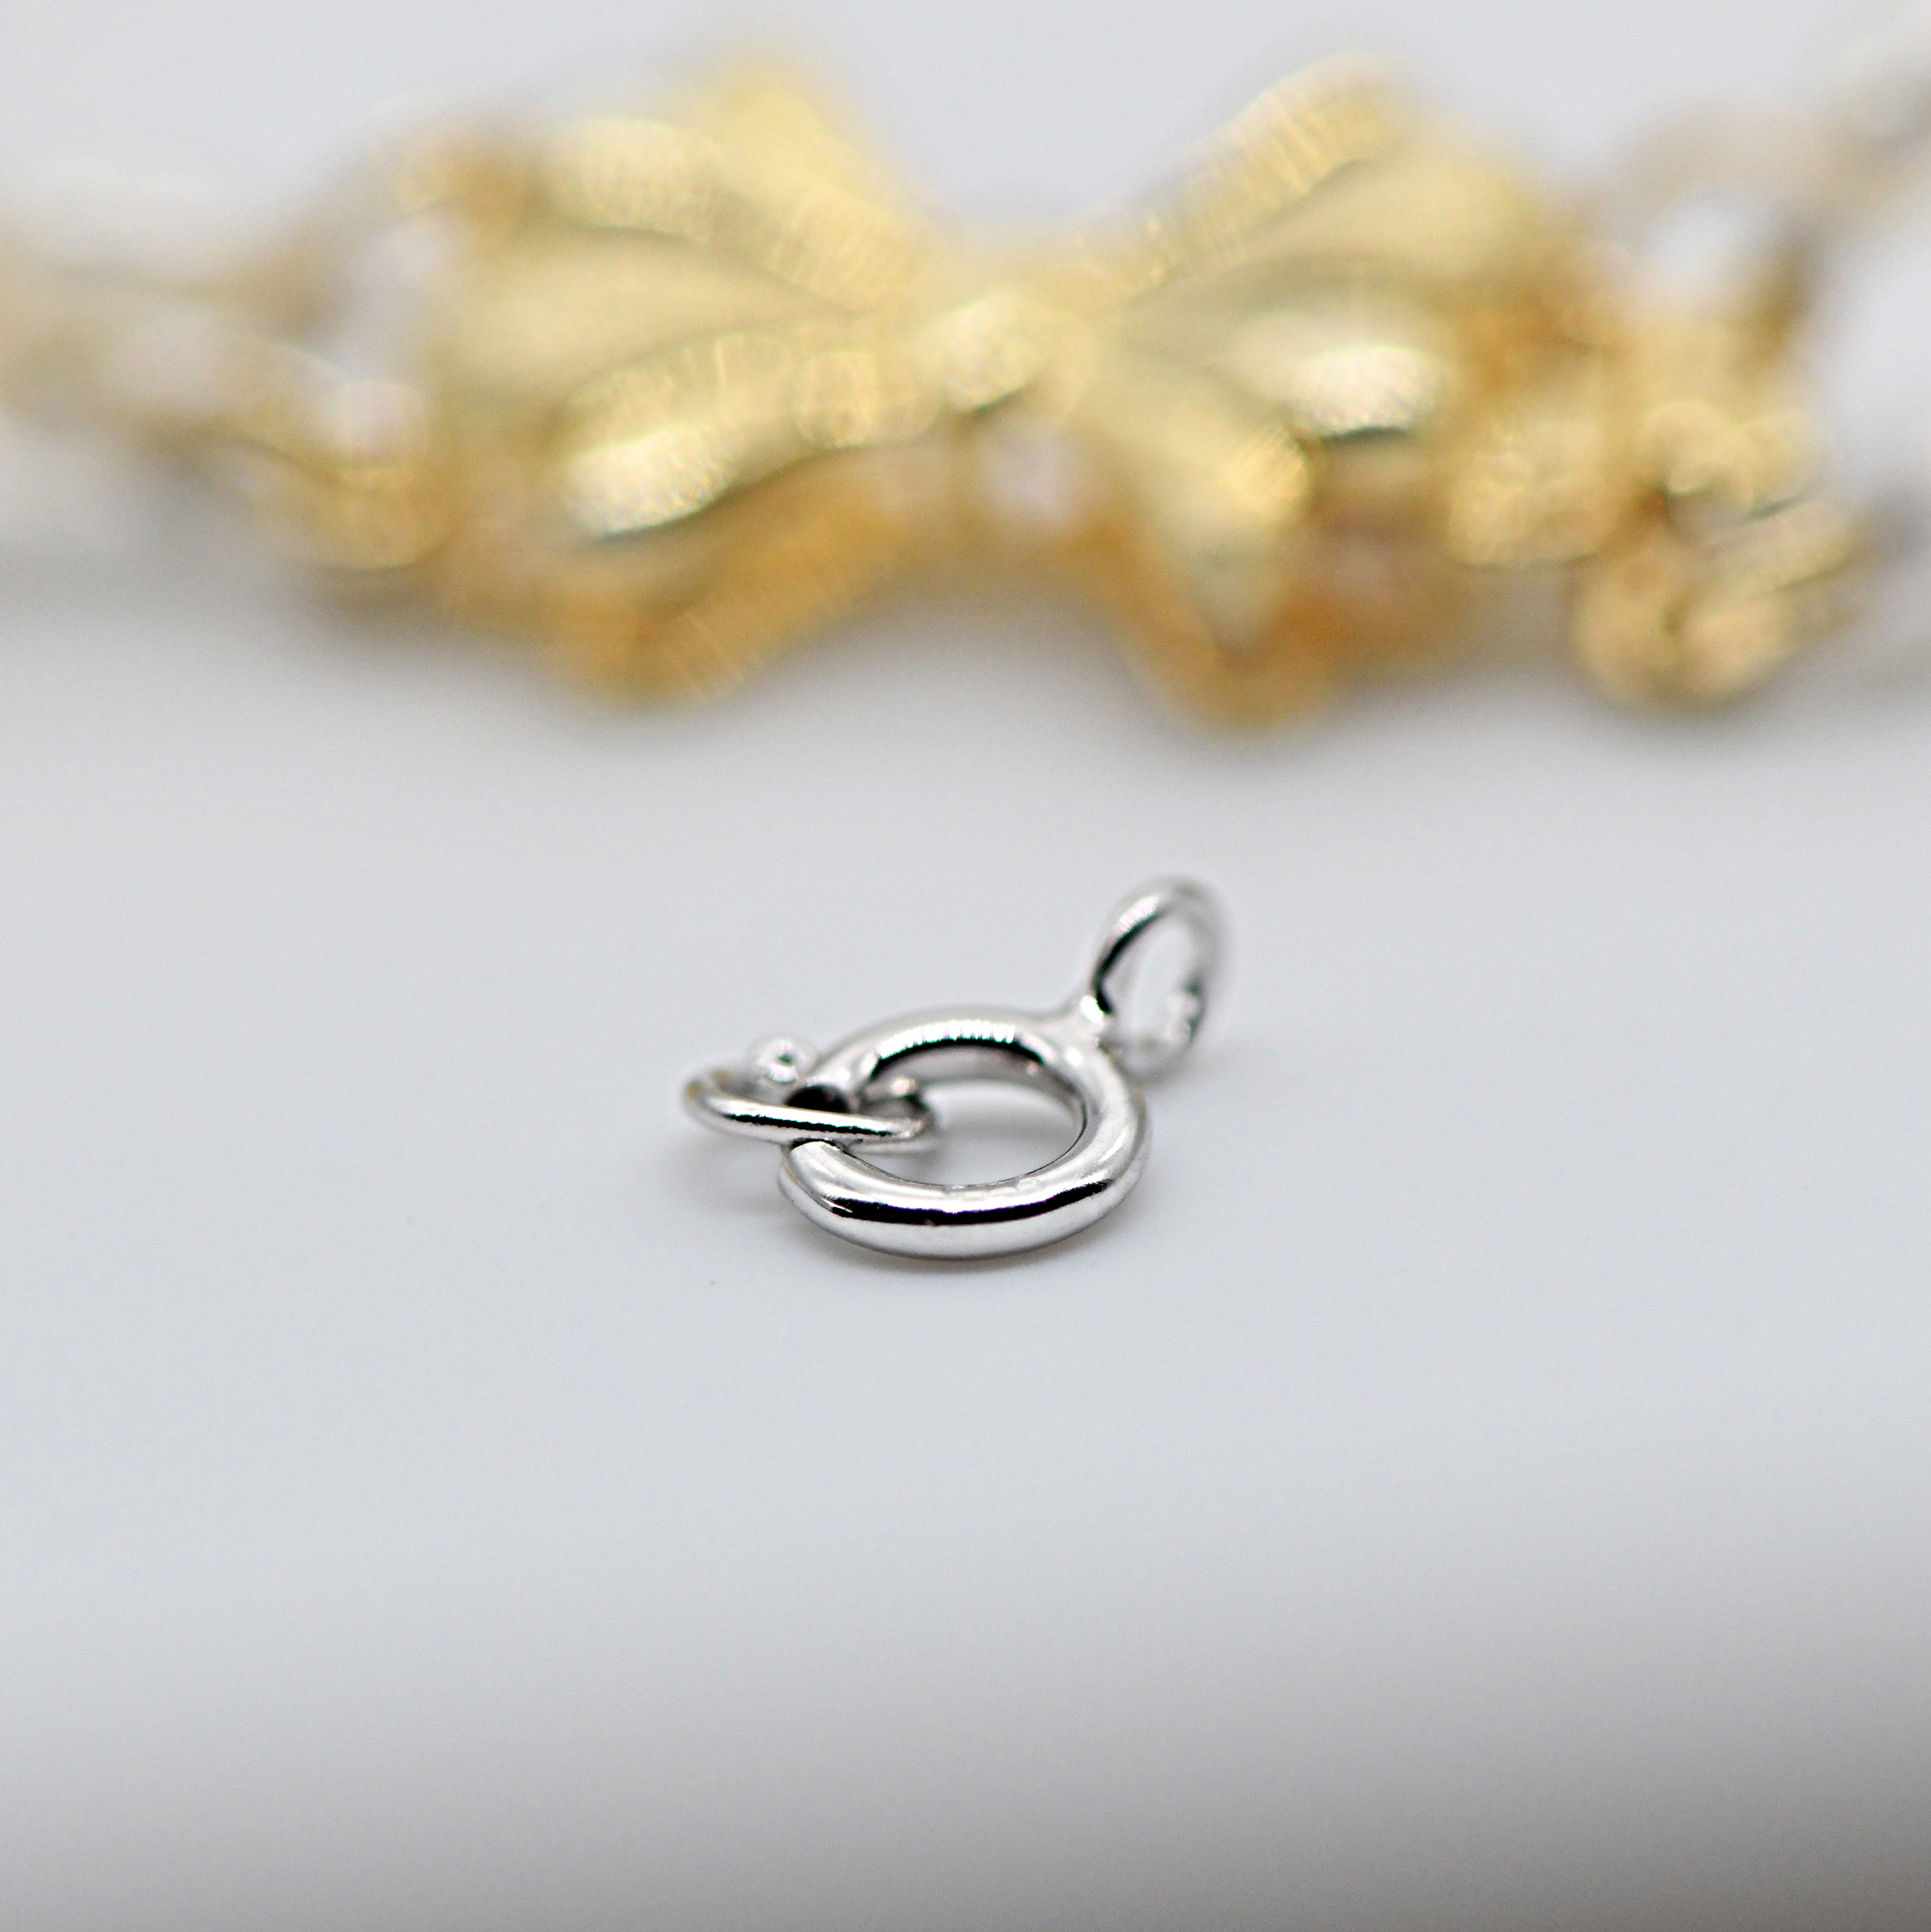 弹簧扣S925纯银珍珠饰品配件diy加长延长链米珠圆圈手链扣头材料